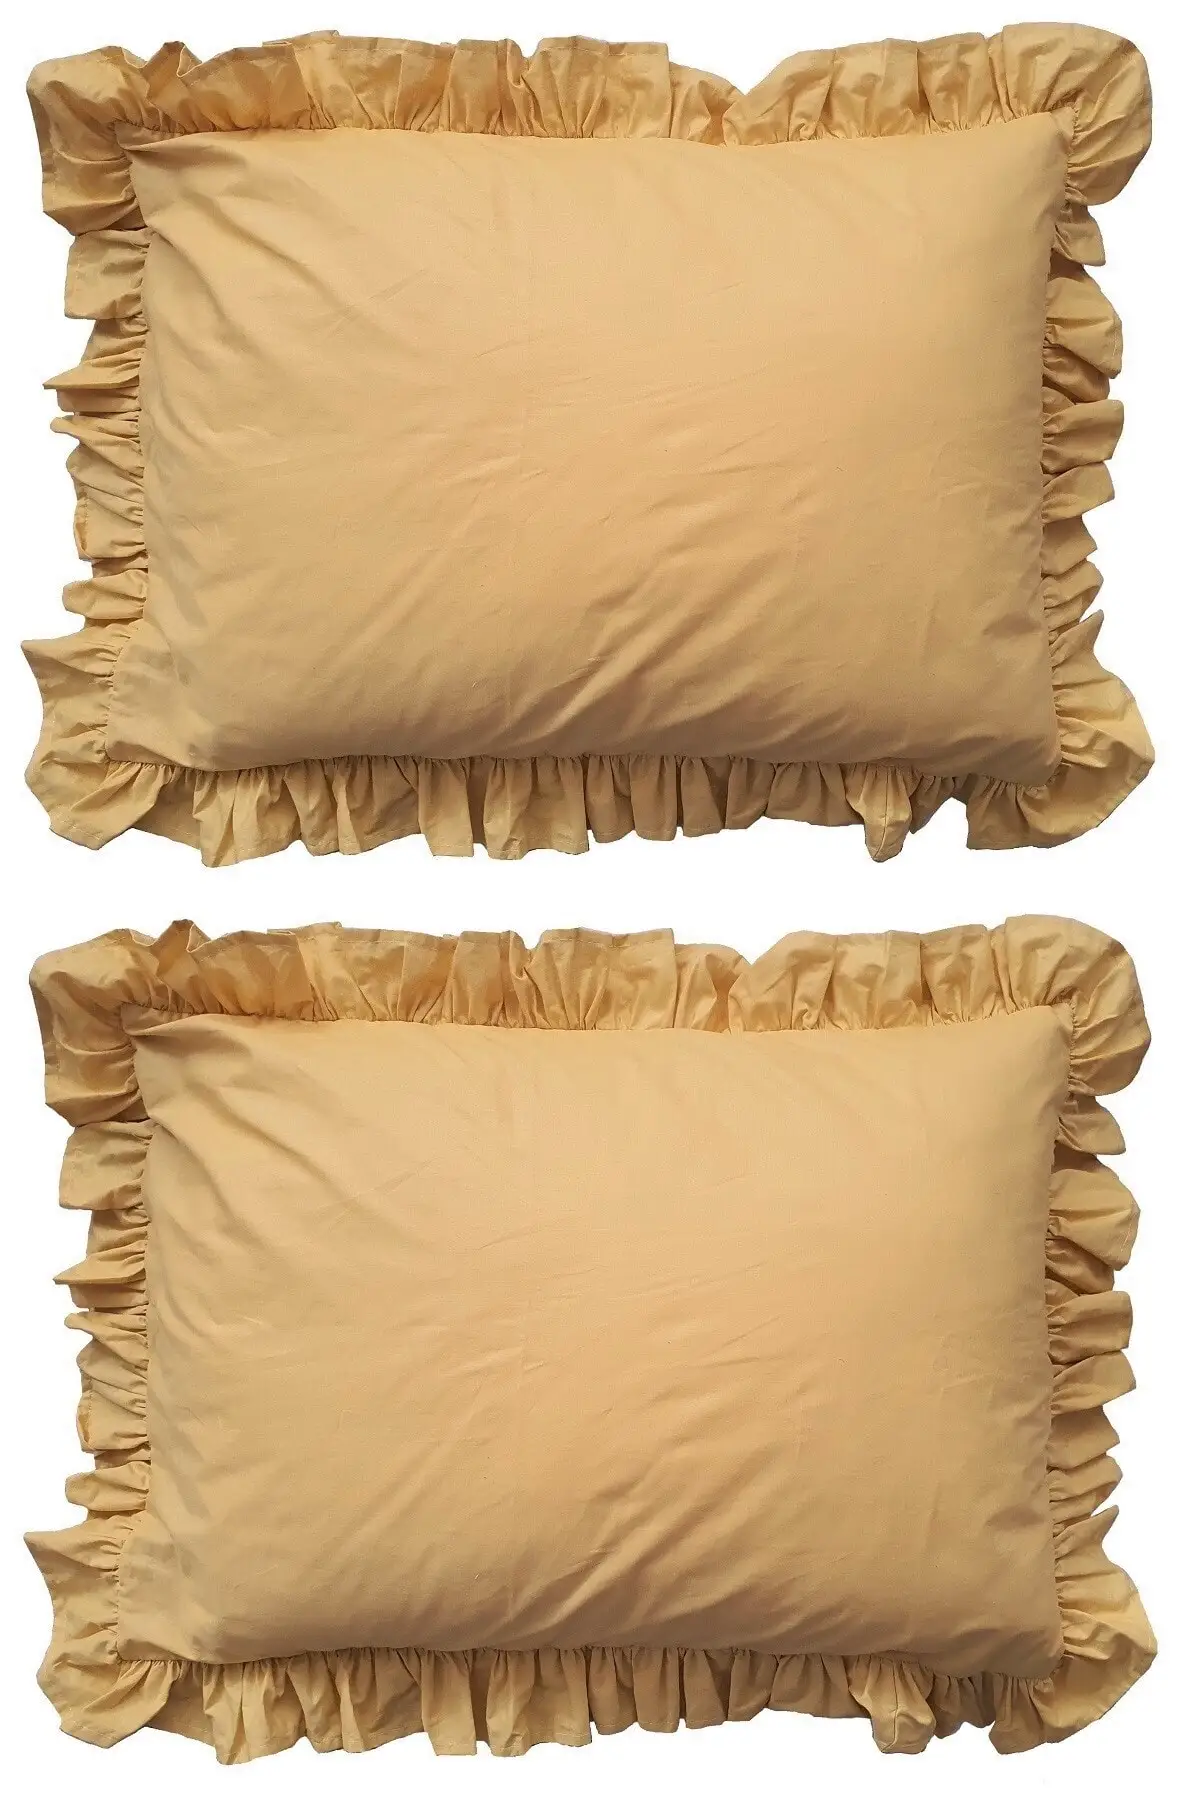 

Наволочки из хлопка с оборками горчичного цвета, 2 шт., 50x70, желтые см, подушка и подушка, текстиль для спальни, мебель для дома